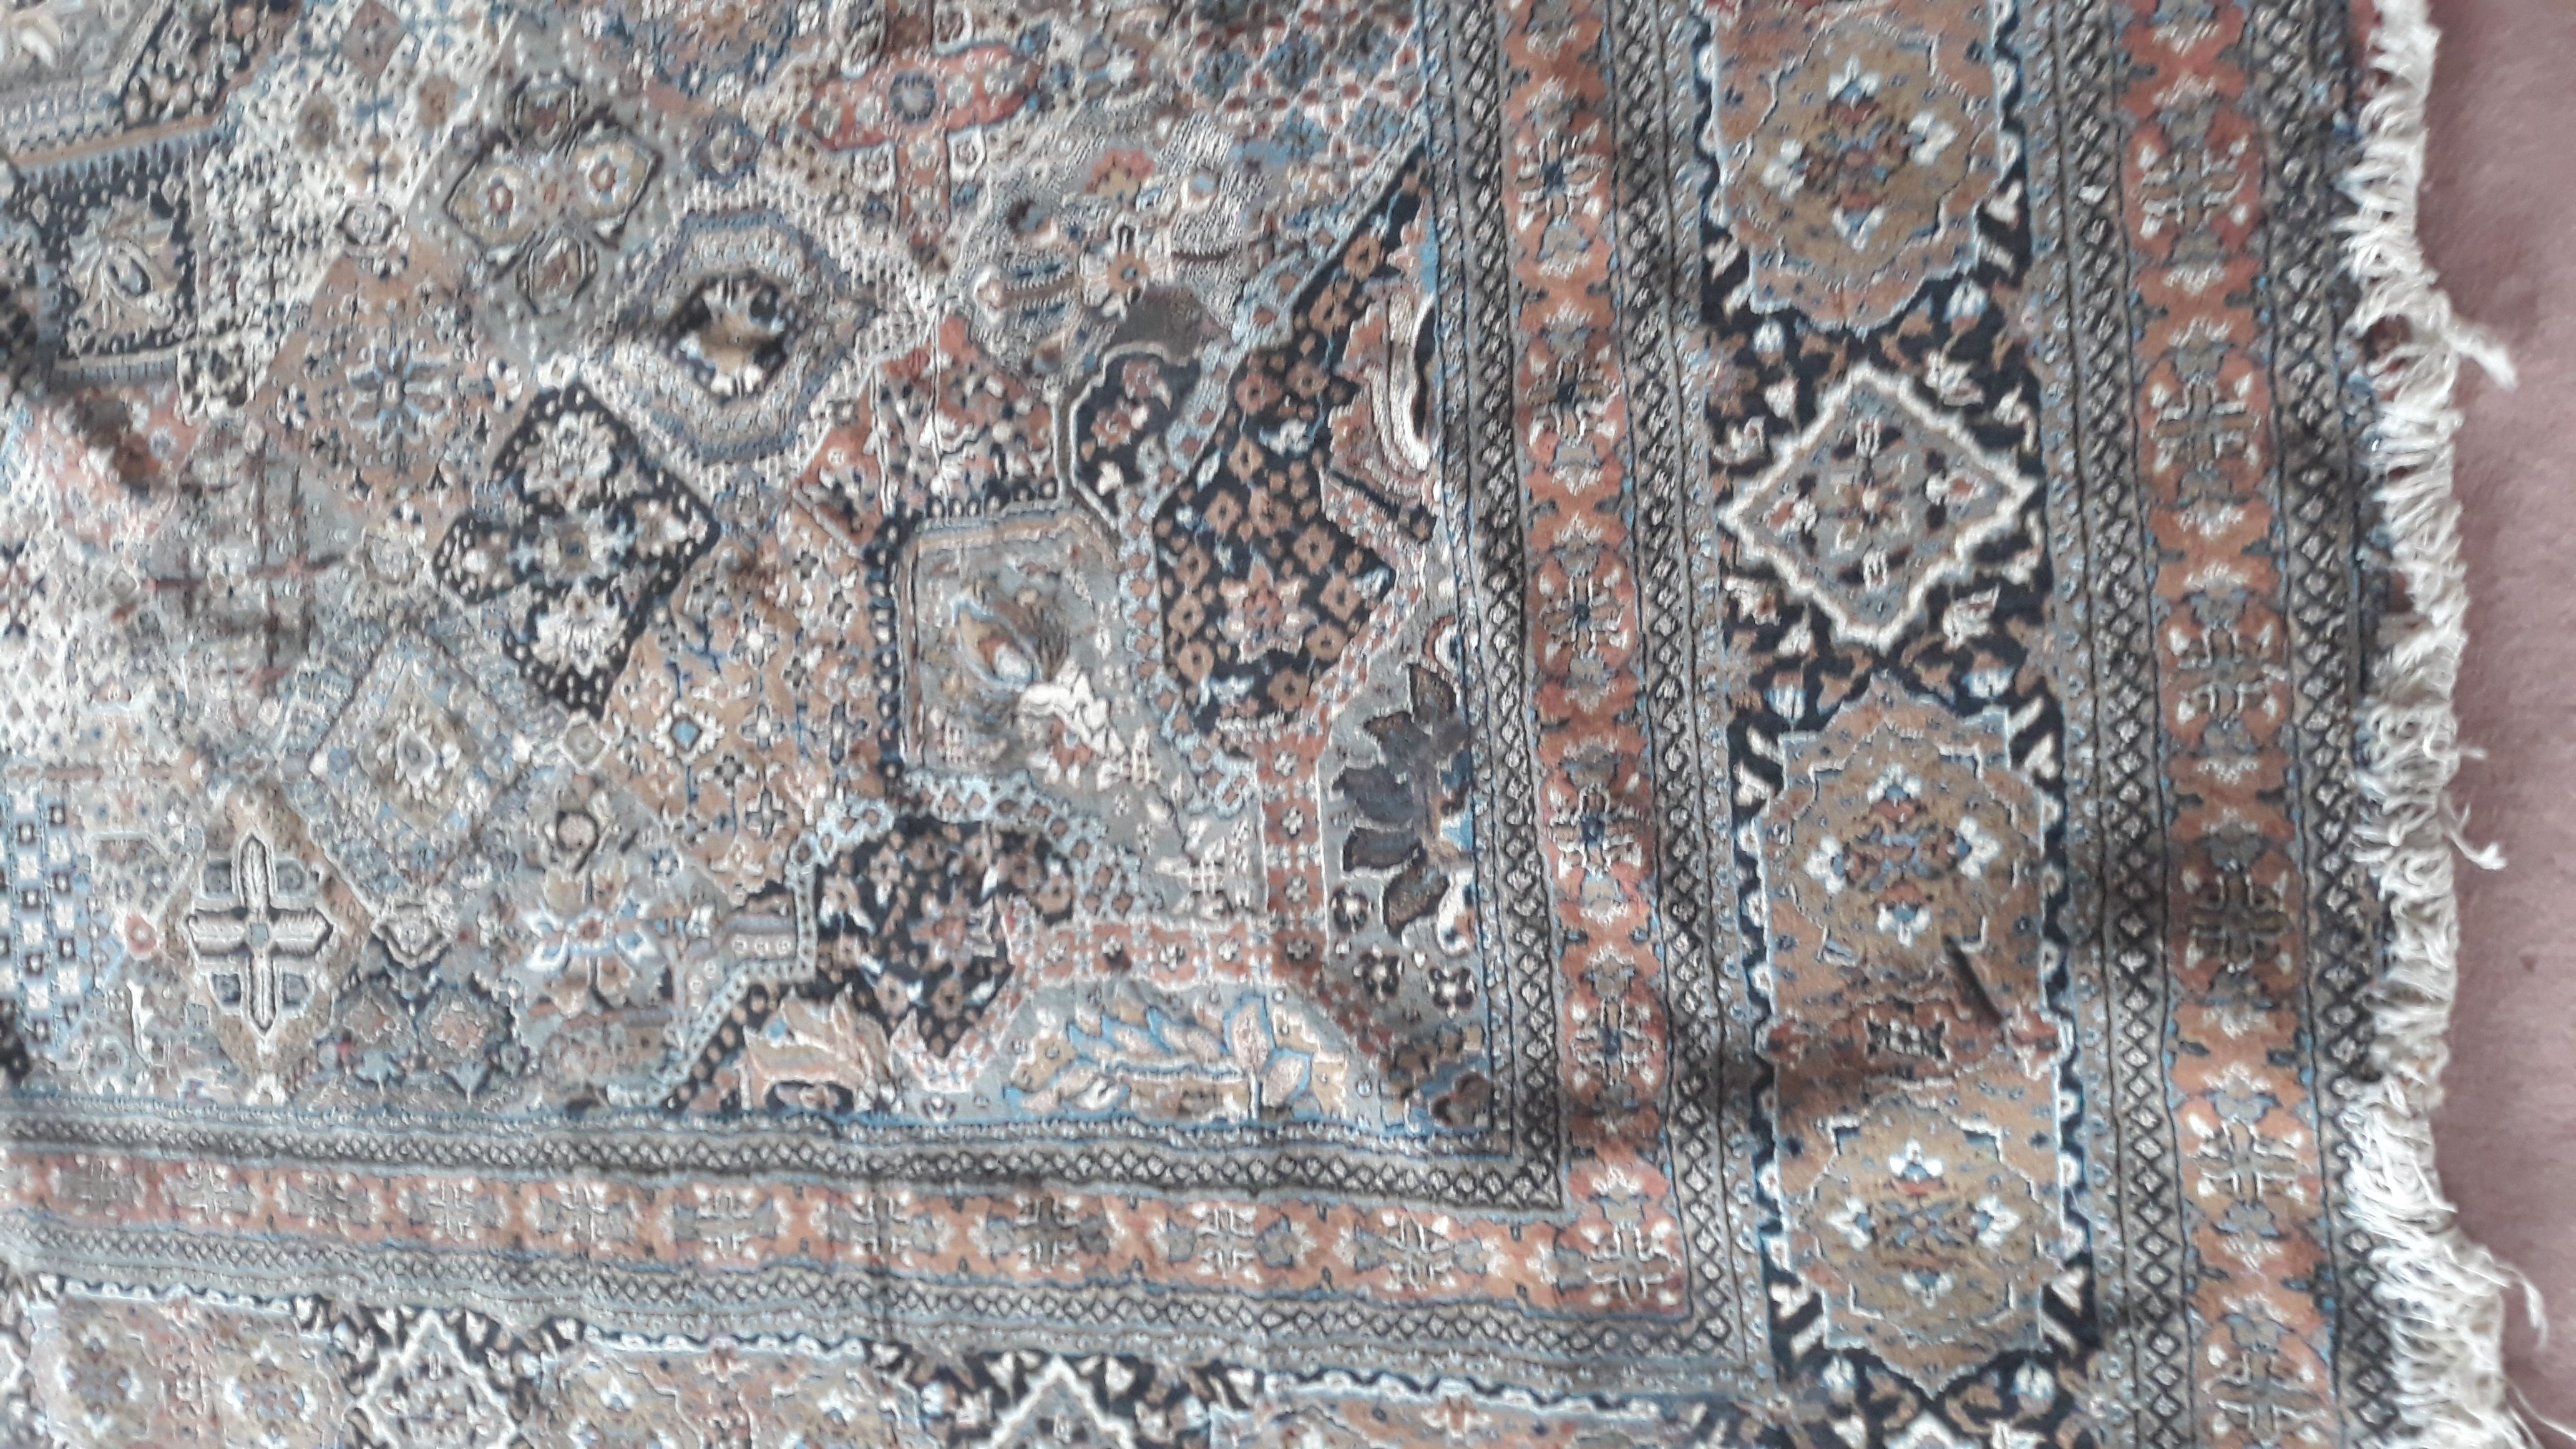 اهدای یک تخته قالی توسط آقای ابراهیم  منظری توکلی به سالن شهید سلیمانی